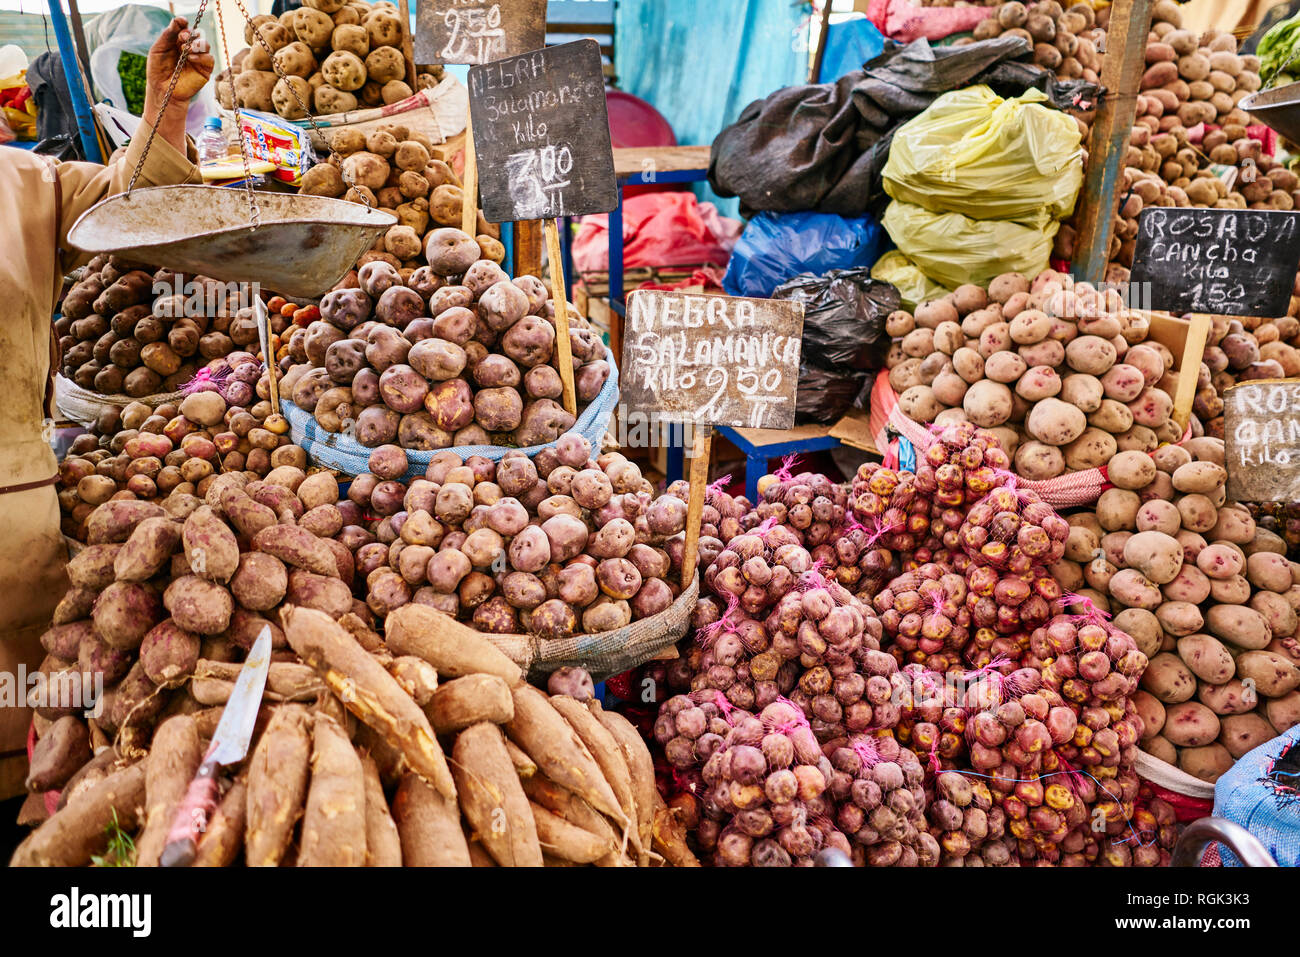 Le Pérou, Arequipa, Mercado Central, marché aux légumes avec des pommes de terre Banque D'Images